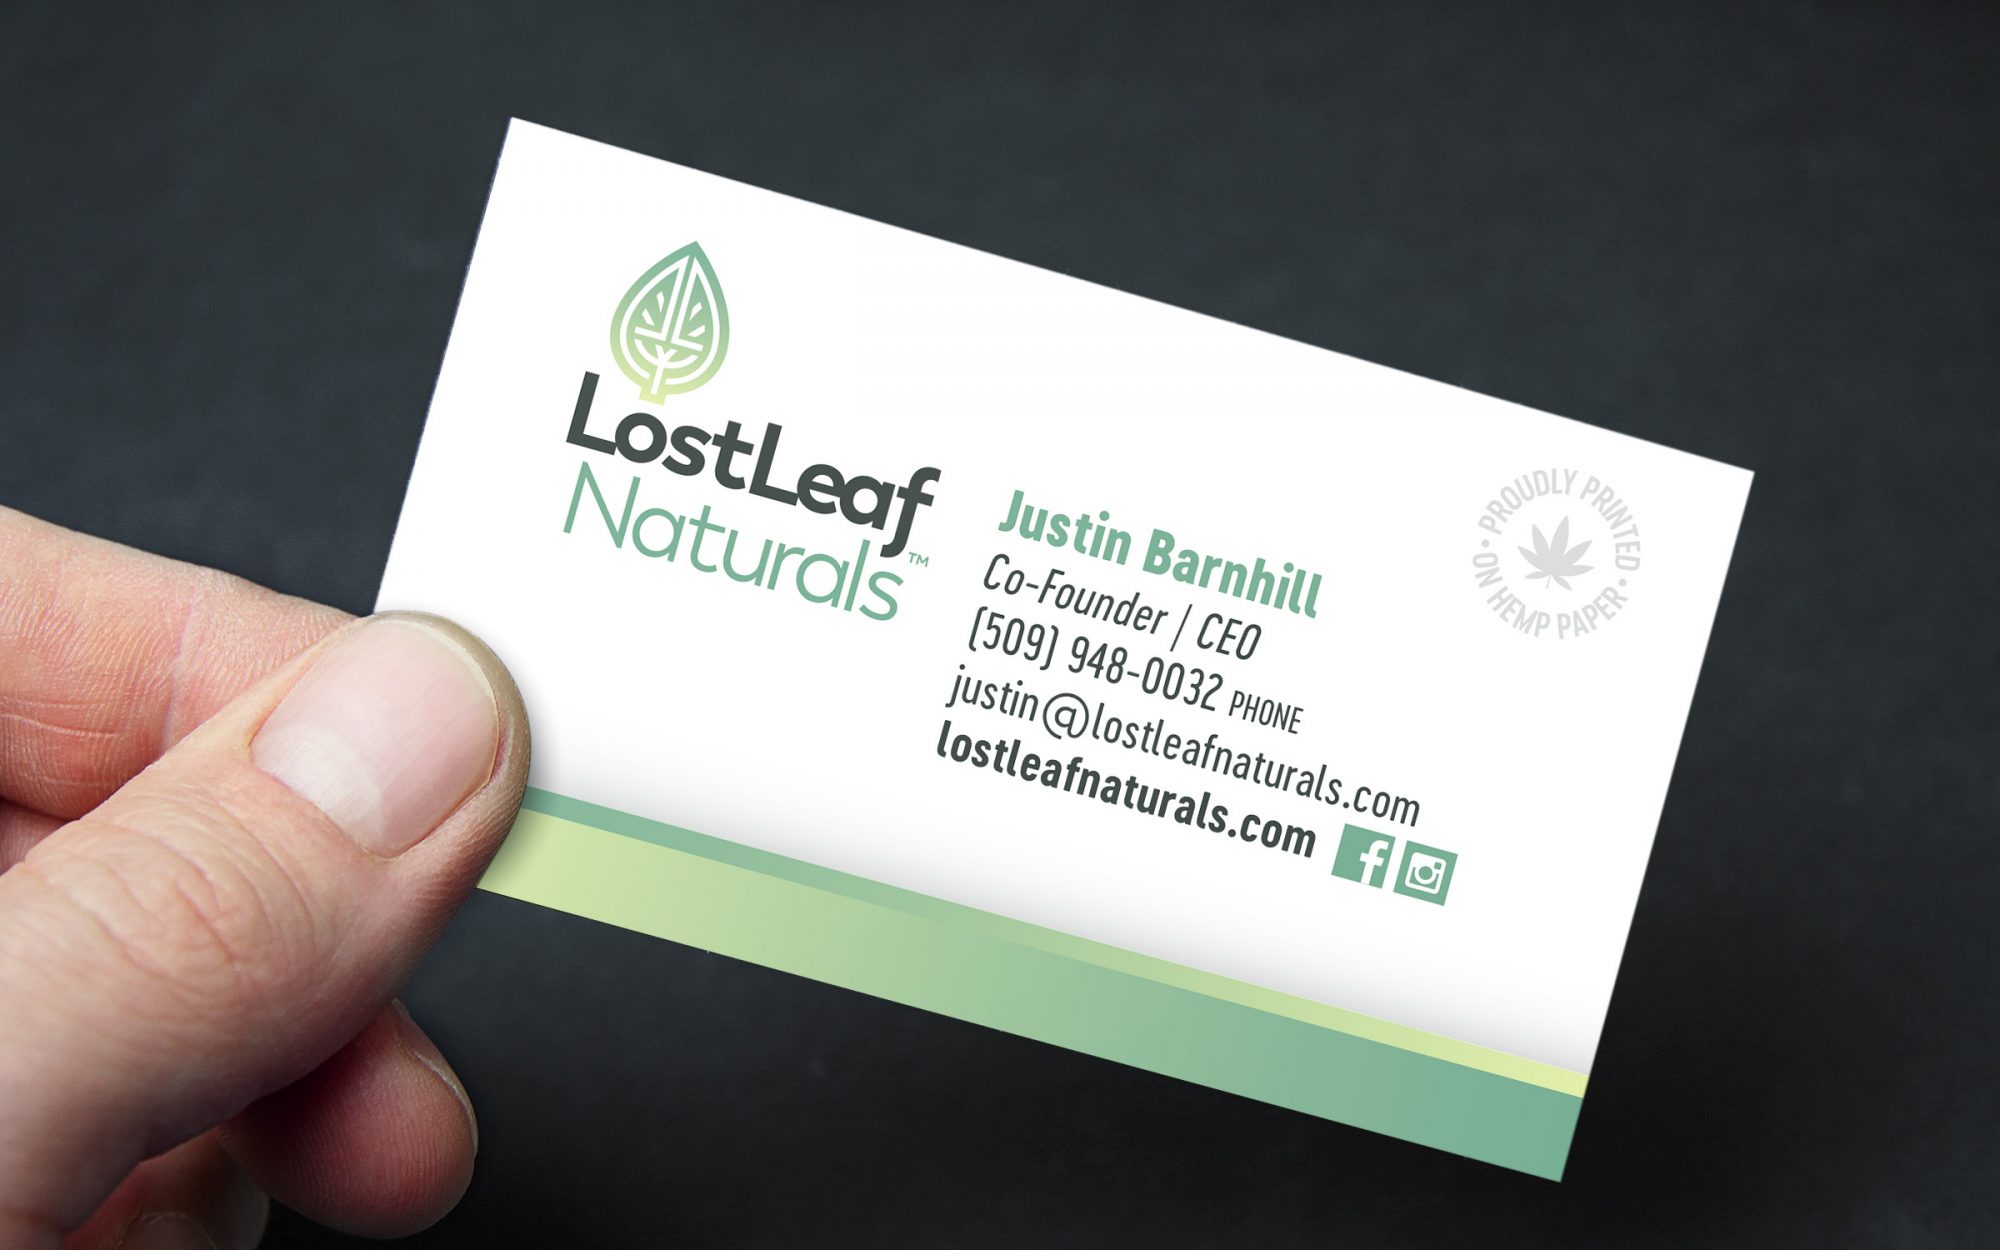 Lostleaf businesscard - LostLeaf Naturals